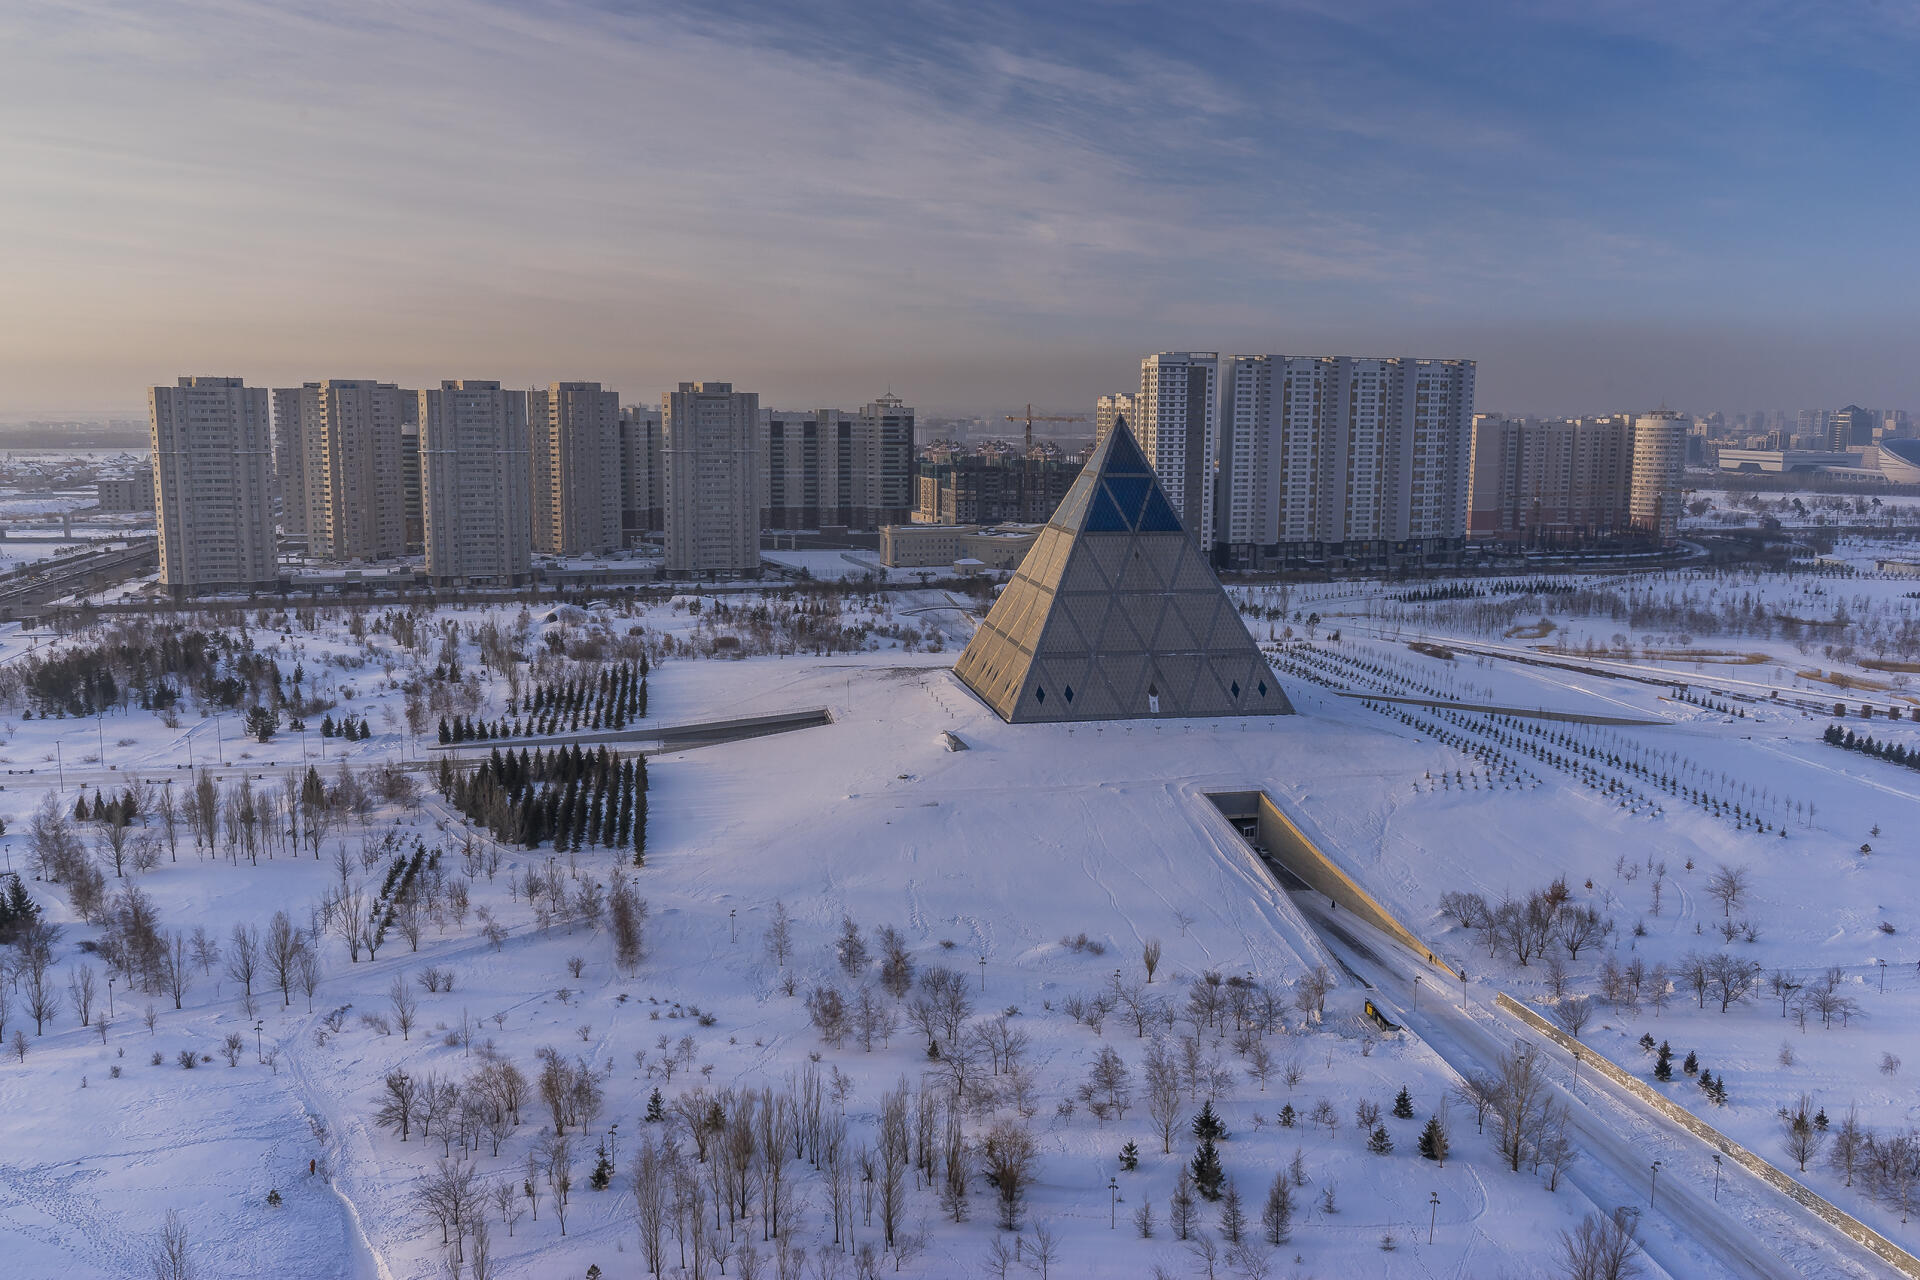 Symbole de la ville d’Astana, situé dans un quartier ultramoderne, le Palais de la paix et de la réconciliation, est une pyramide de 62 mètres de haut, qui sert de centre spirituel national non confessionnel et de lieu d’événements. 